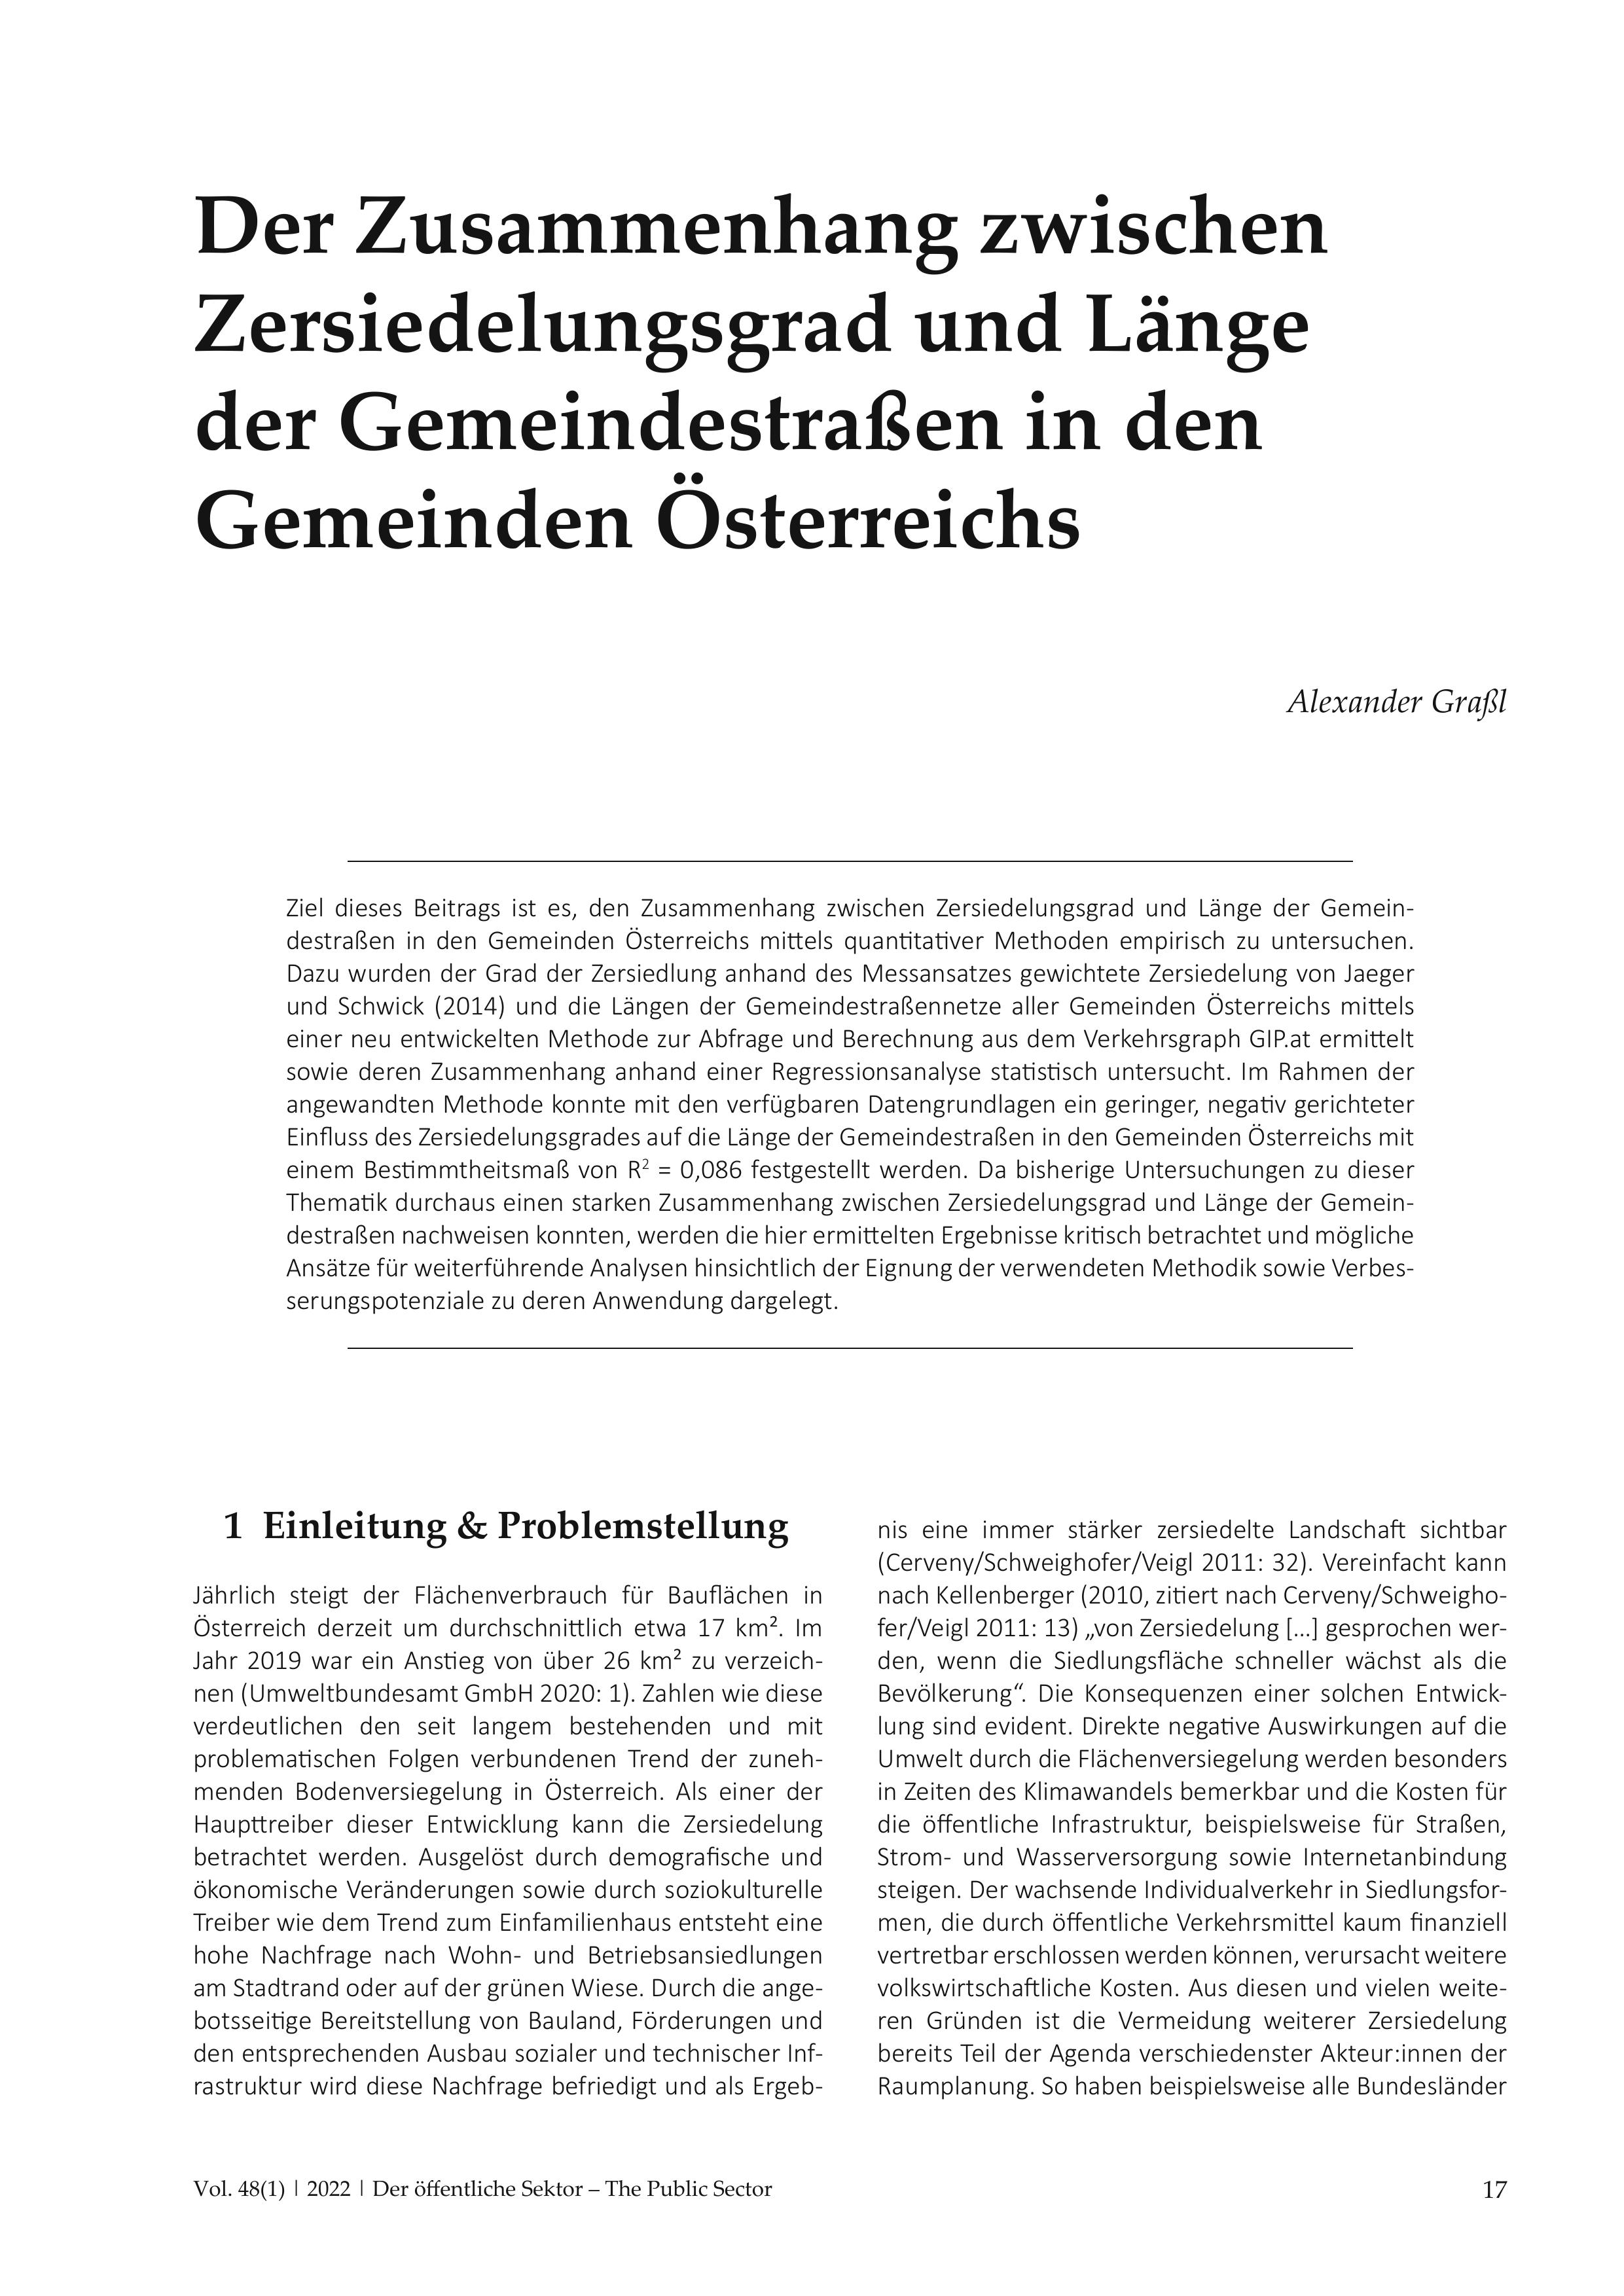 Der Zusammenhang zwischen Zersiedelungsgrad und Länge der Gemeindestraßen in den Gemeinden Österreichs